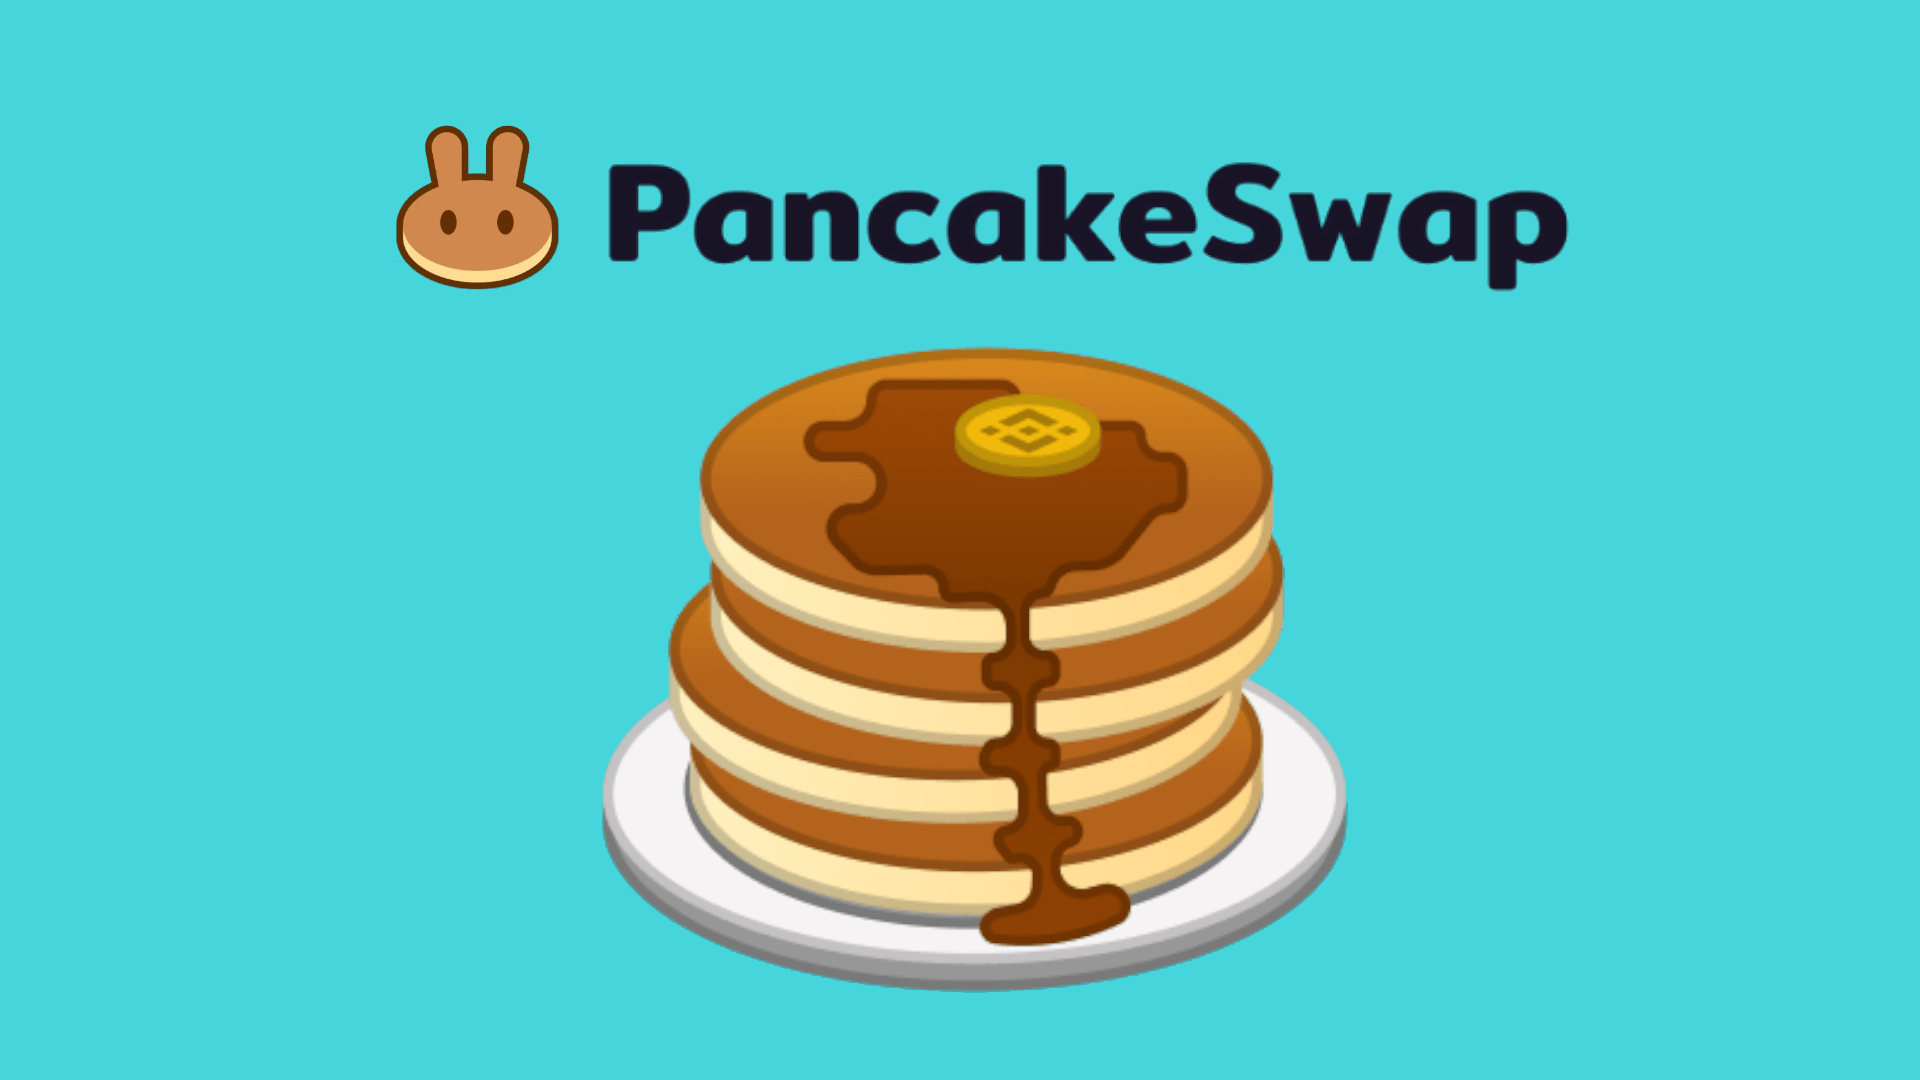 PancakeSwap V2 thay đổi toàn bộ "luật chơi" - Người dùng cần biết gì?